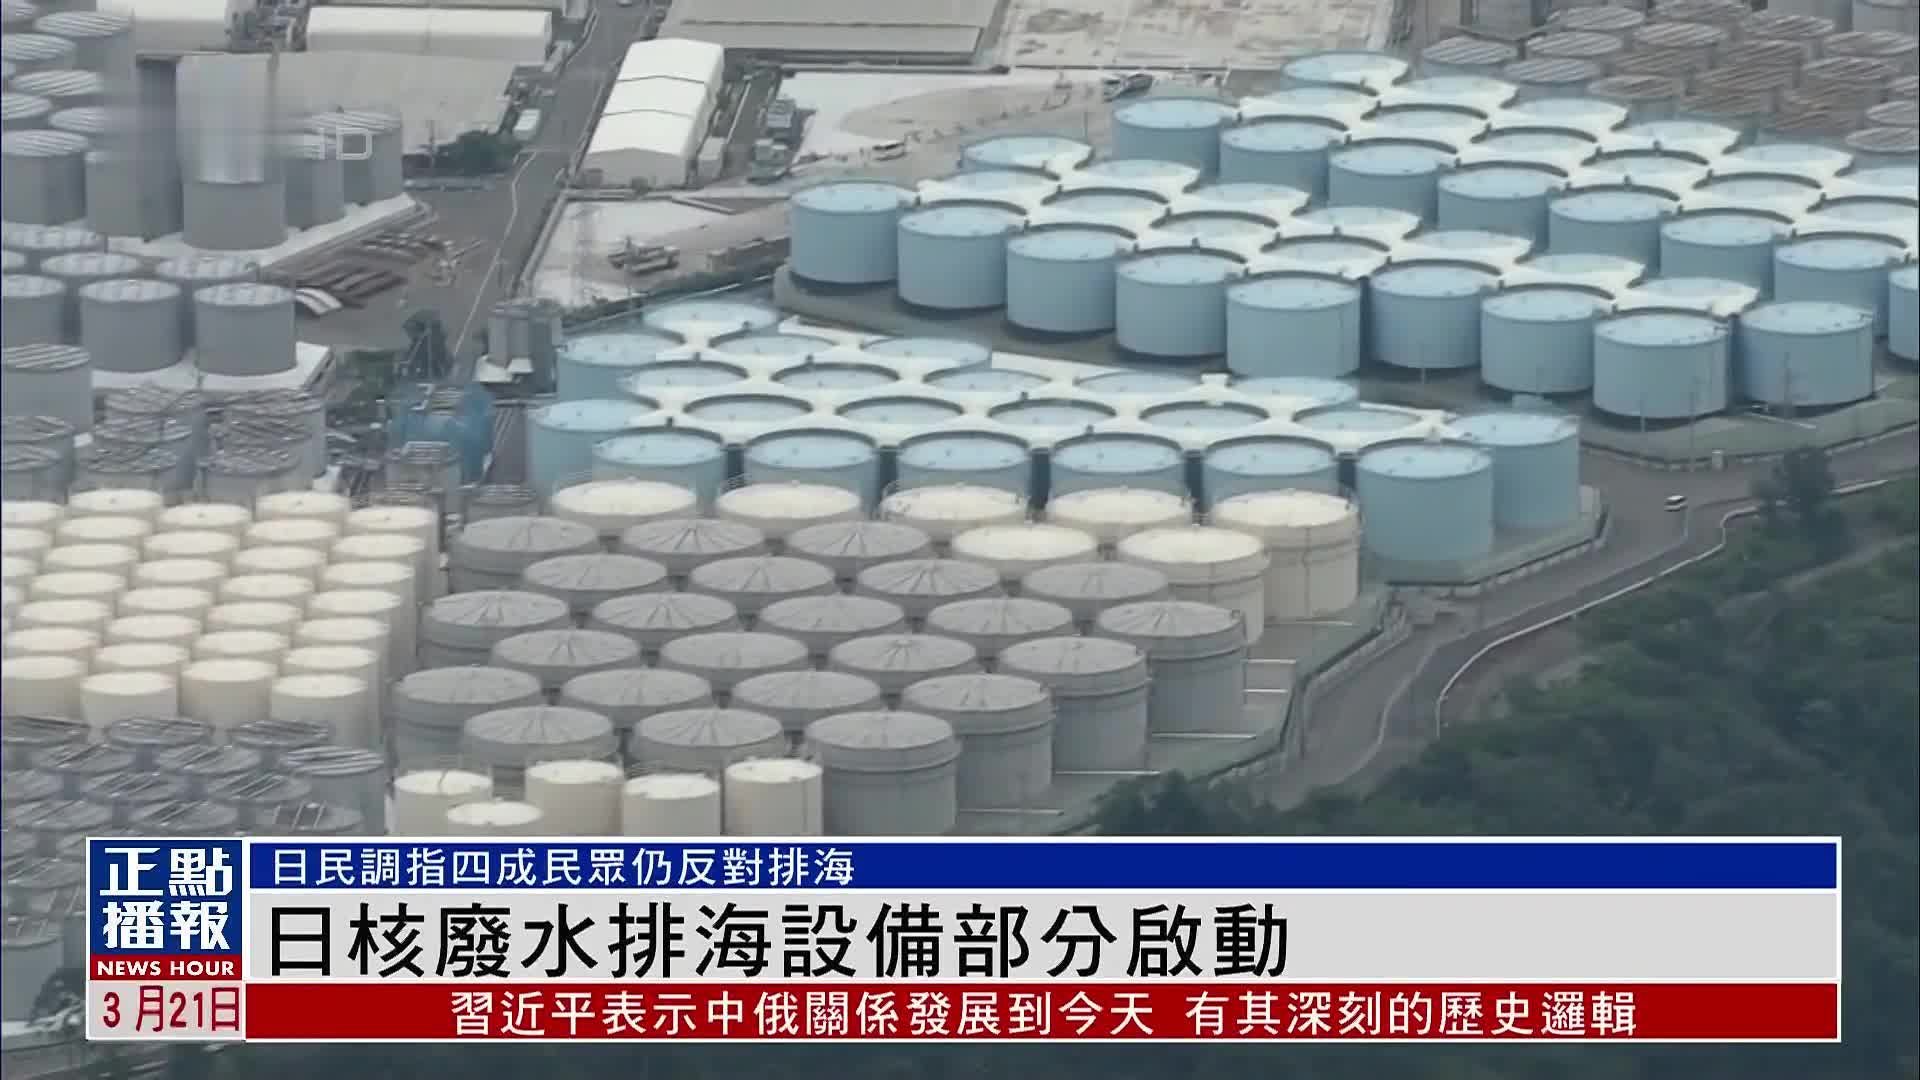 日本核废水排海设备部分启动 民调指四成民众仍反对